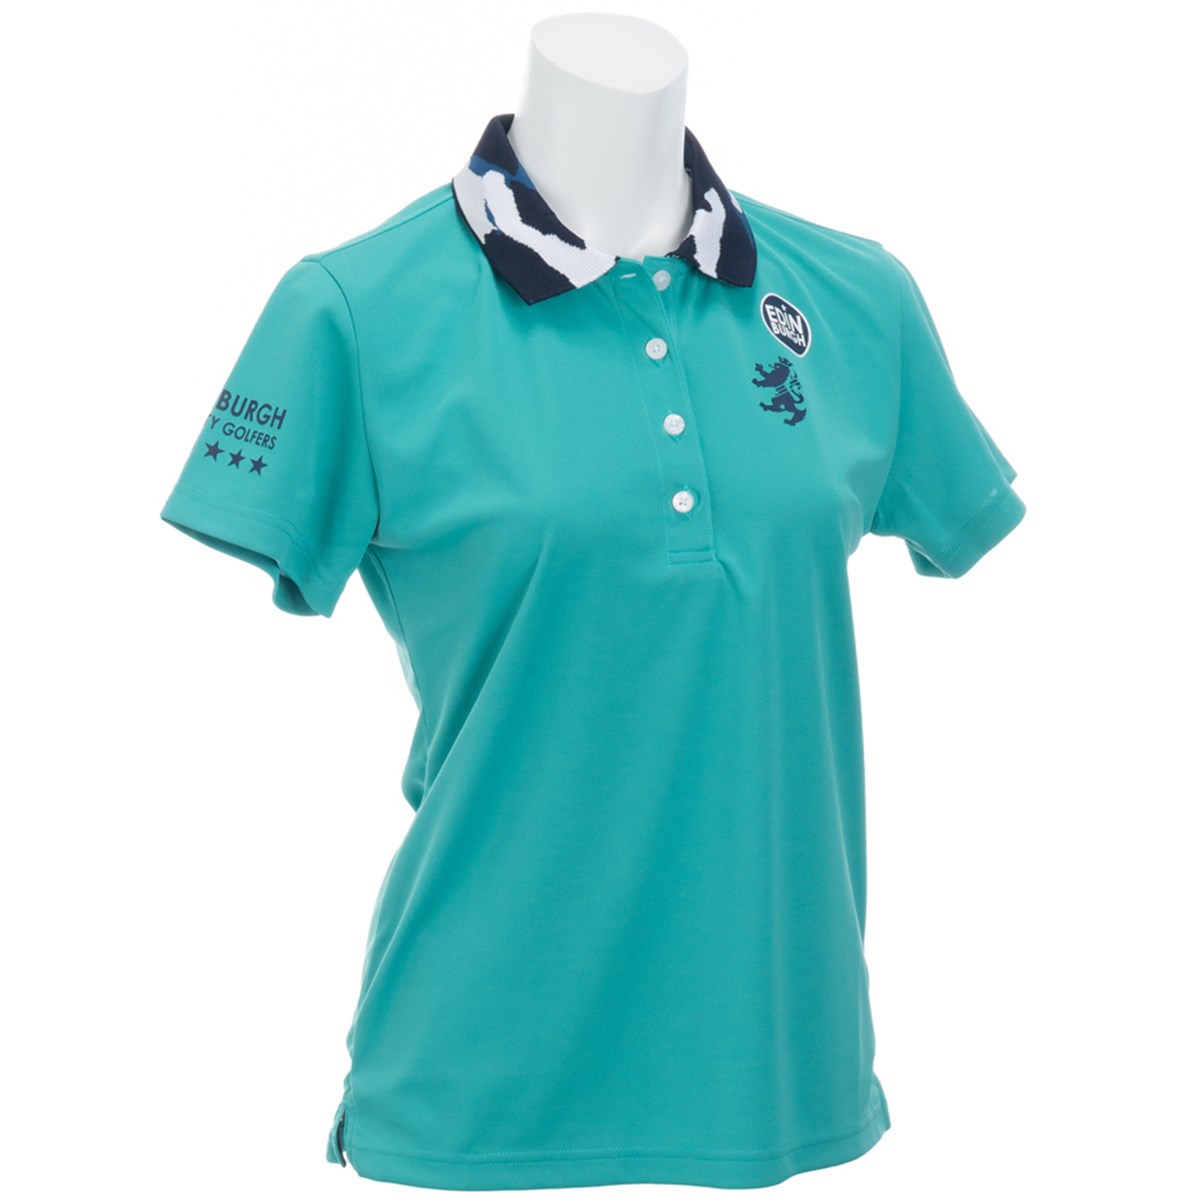  [アウトレット] [在庫限りのお買い得商品] アドミラル 襟カモフラージュ 半袖ポロシャツ ゴルフウェア